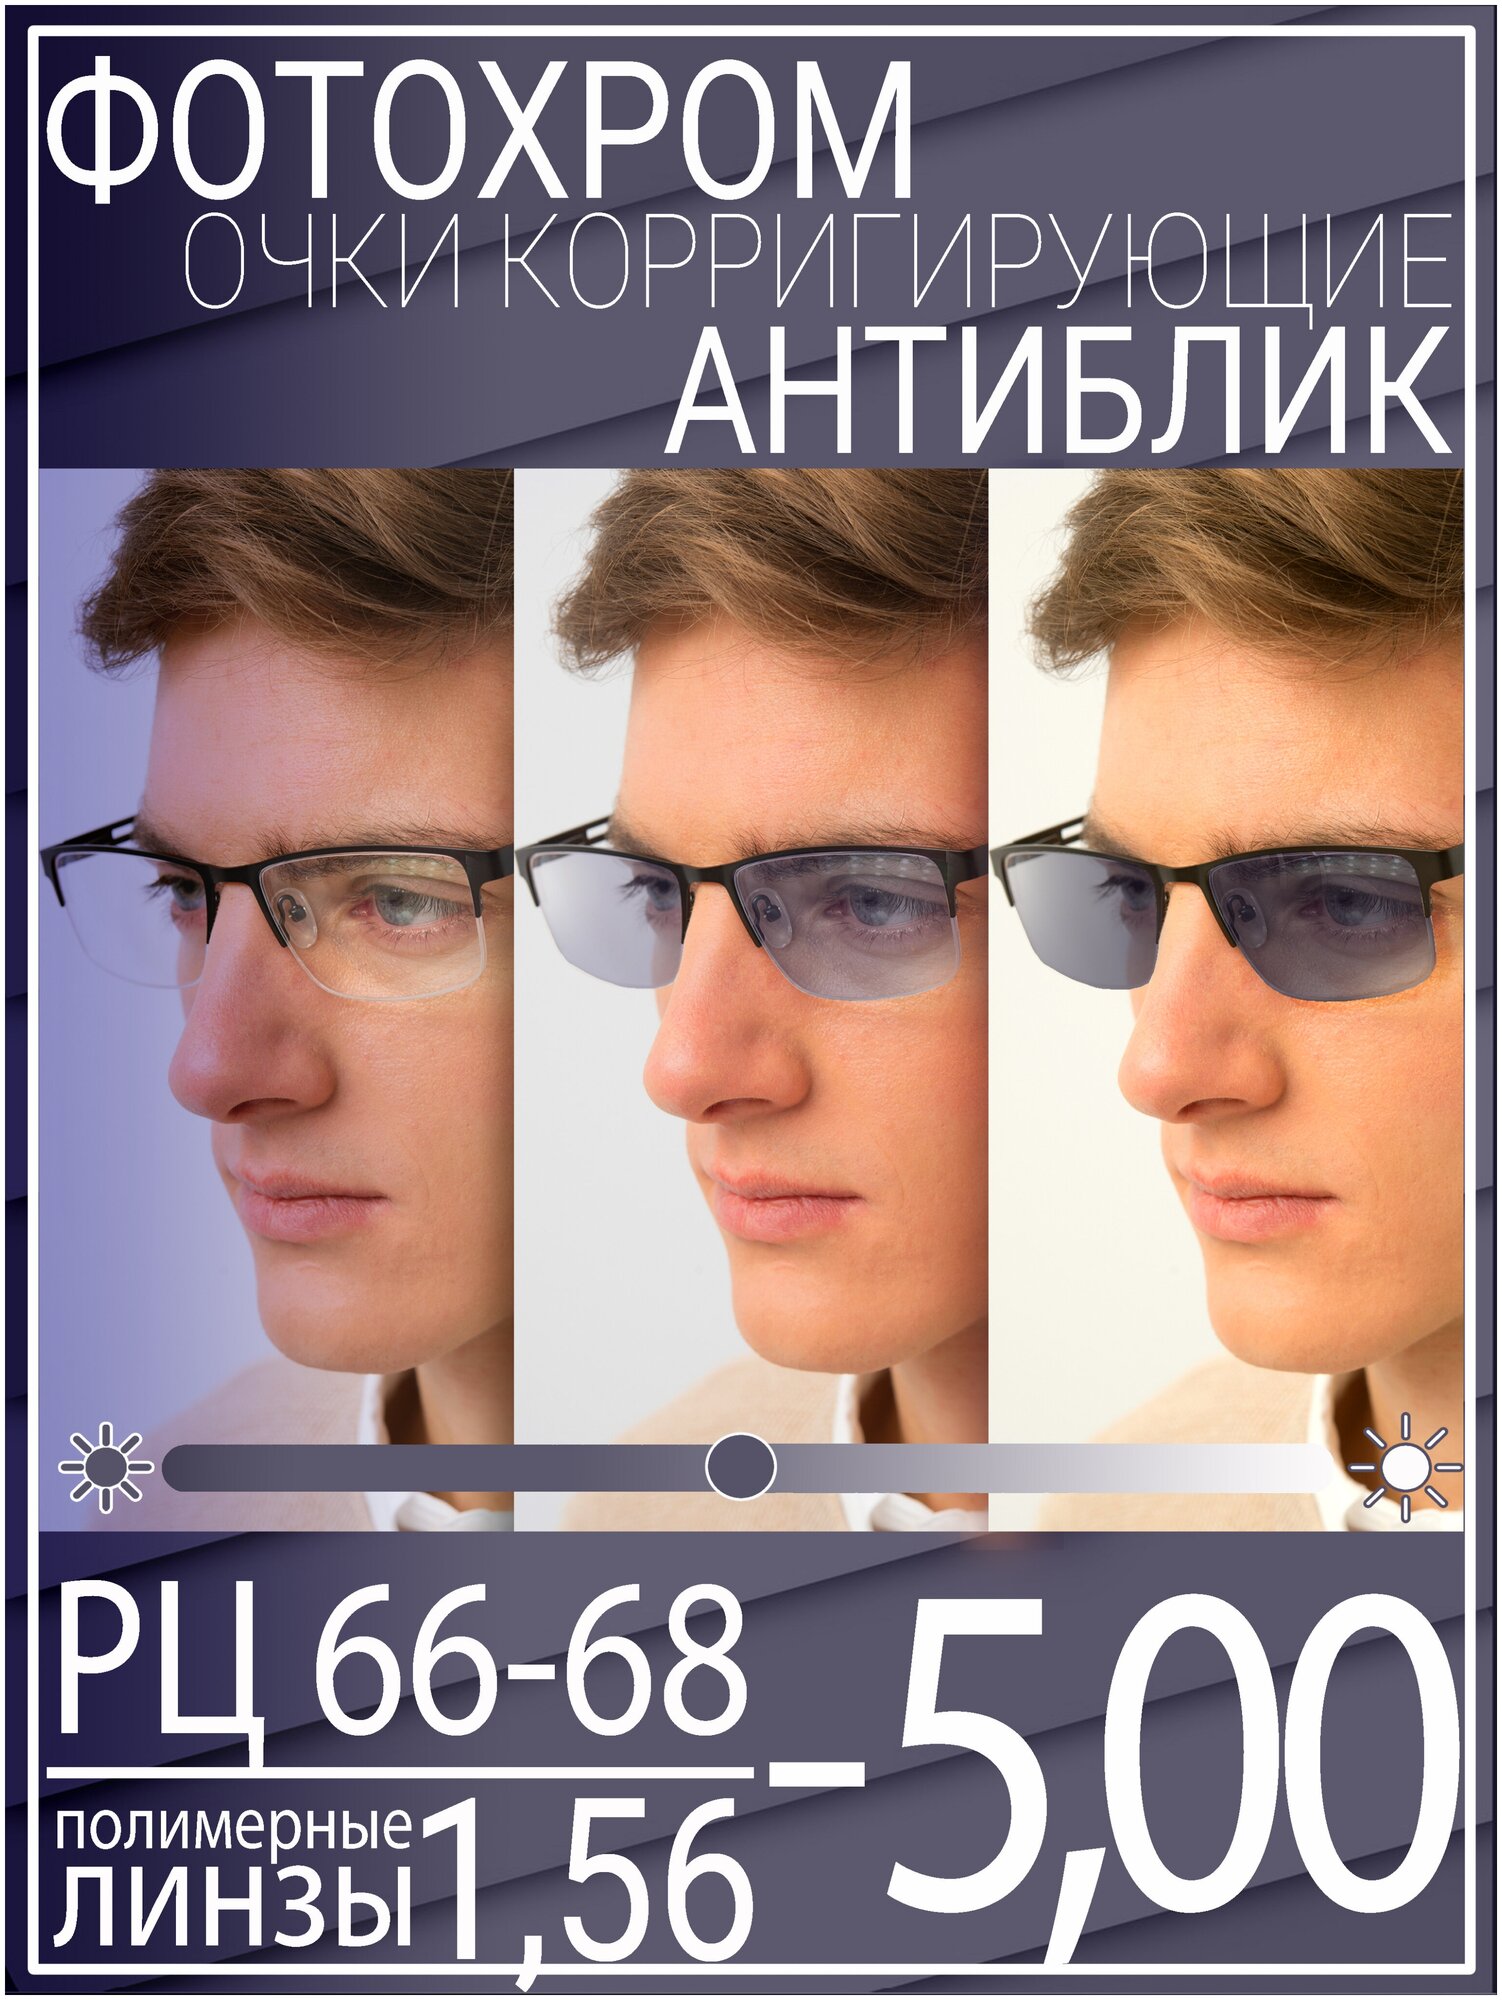 Готовые очки для зрения с фотохромной линзой -5.0 РЦ 66-68 / Очки корригирующие мужские